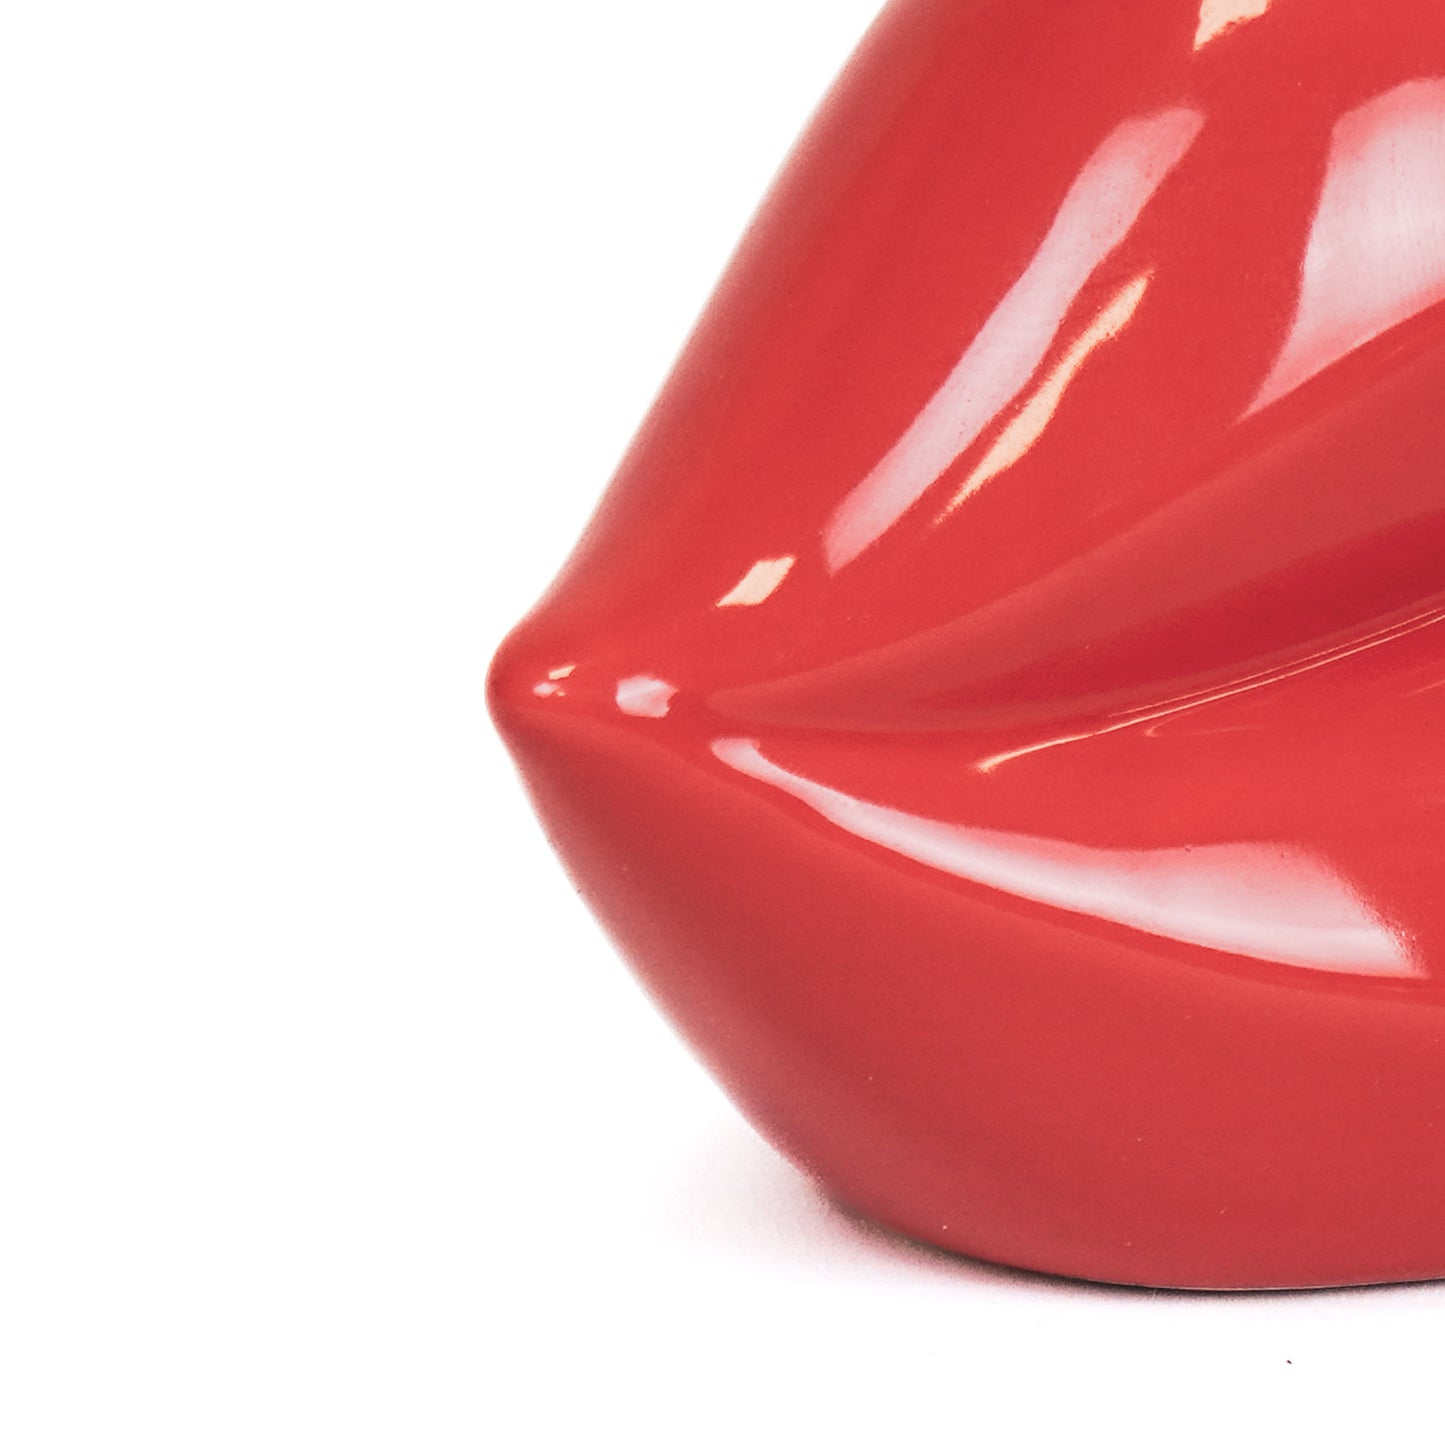 Pot - Lip - Ceramic - Red - 15,5x6,5x7,5cm